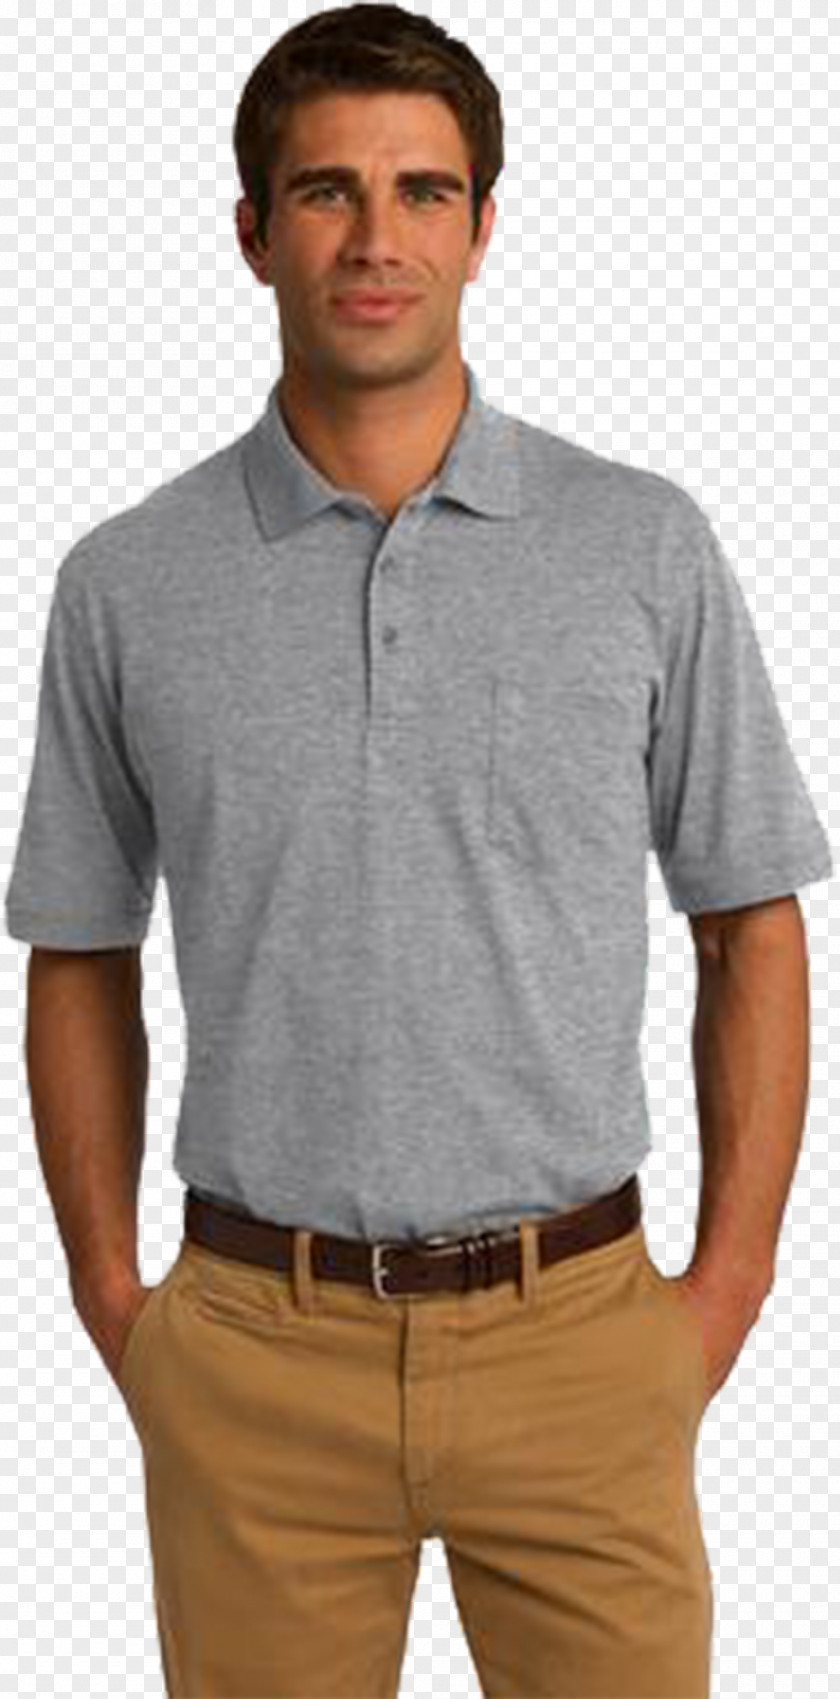 T-shirt Polo Shirt Gildan Activewear Clothing Jersey PNG